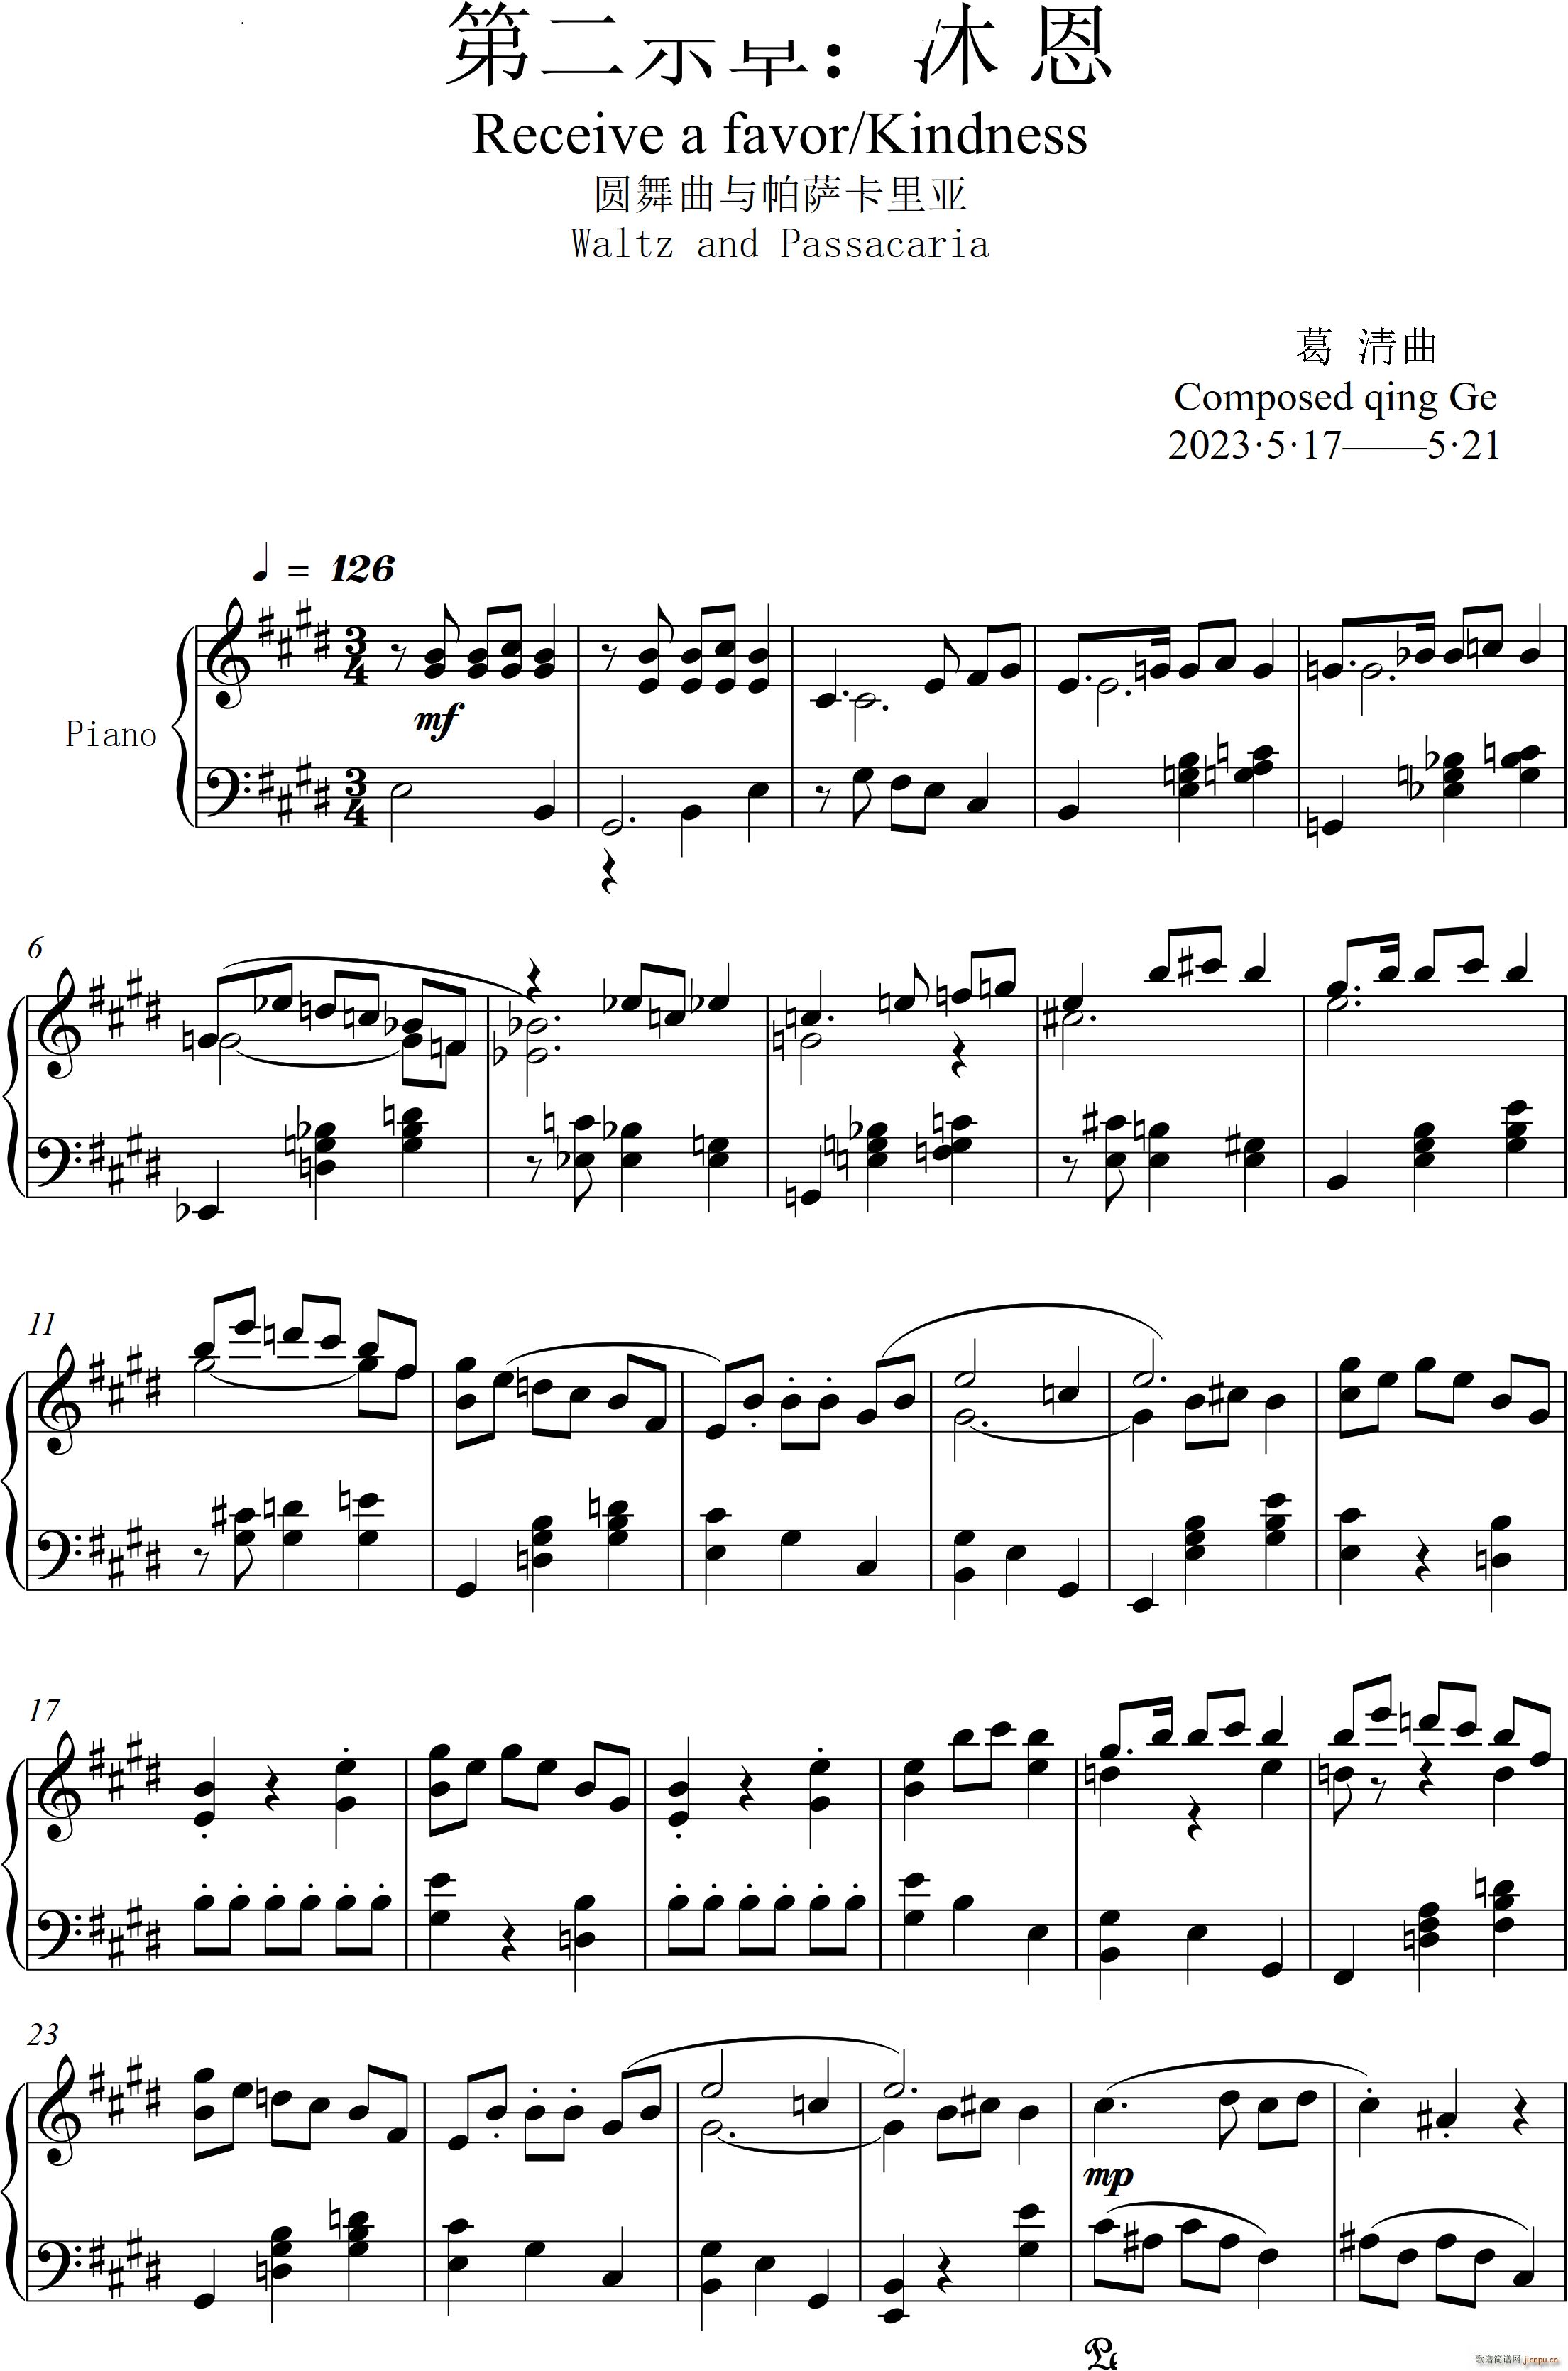 第22钢琴奏鸣曲 信仰 Piano Sonata No`22四个乐章(钢琴谱)11